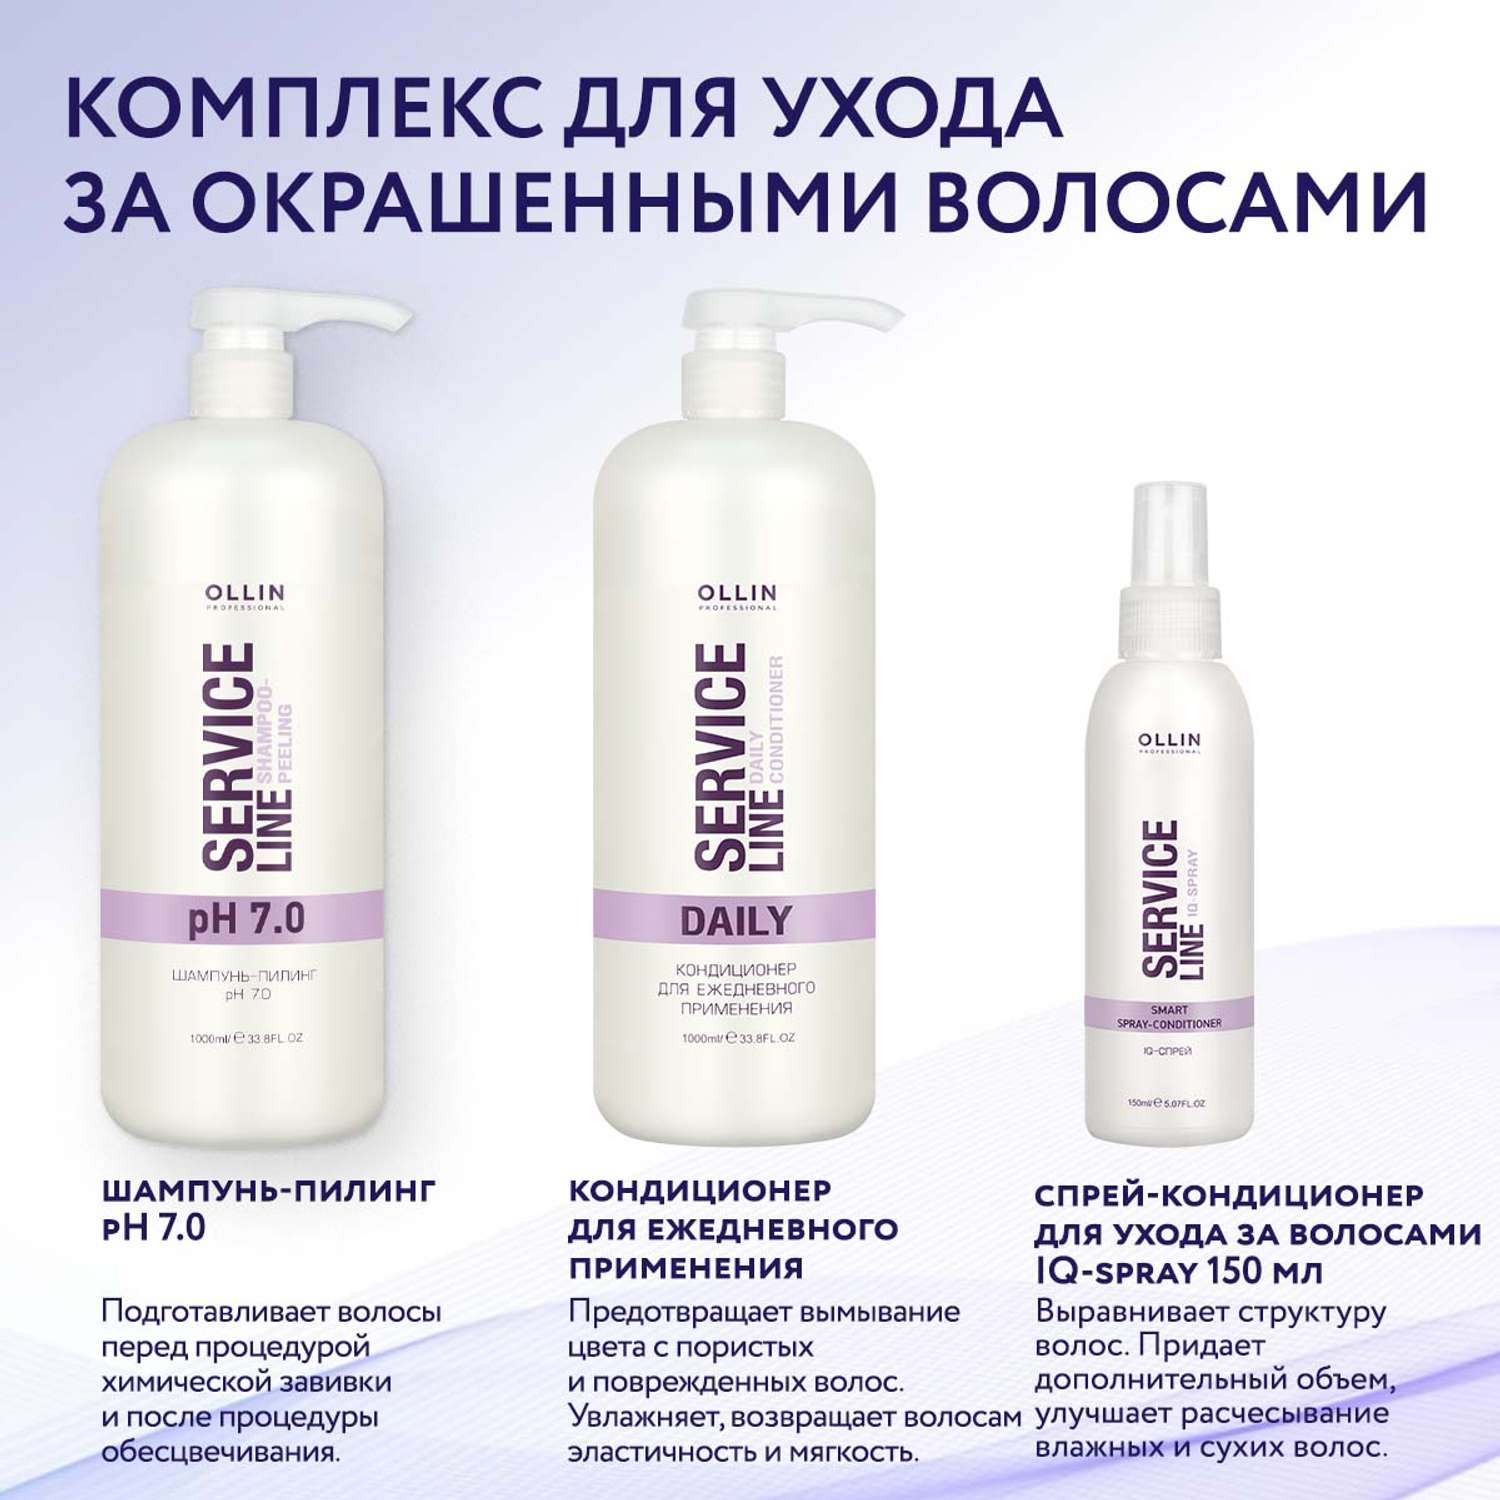 Шампунь-пилинг Ollin SERVICE LINE для очищения волос pH 7.0 1000 мл - фото 6